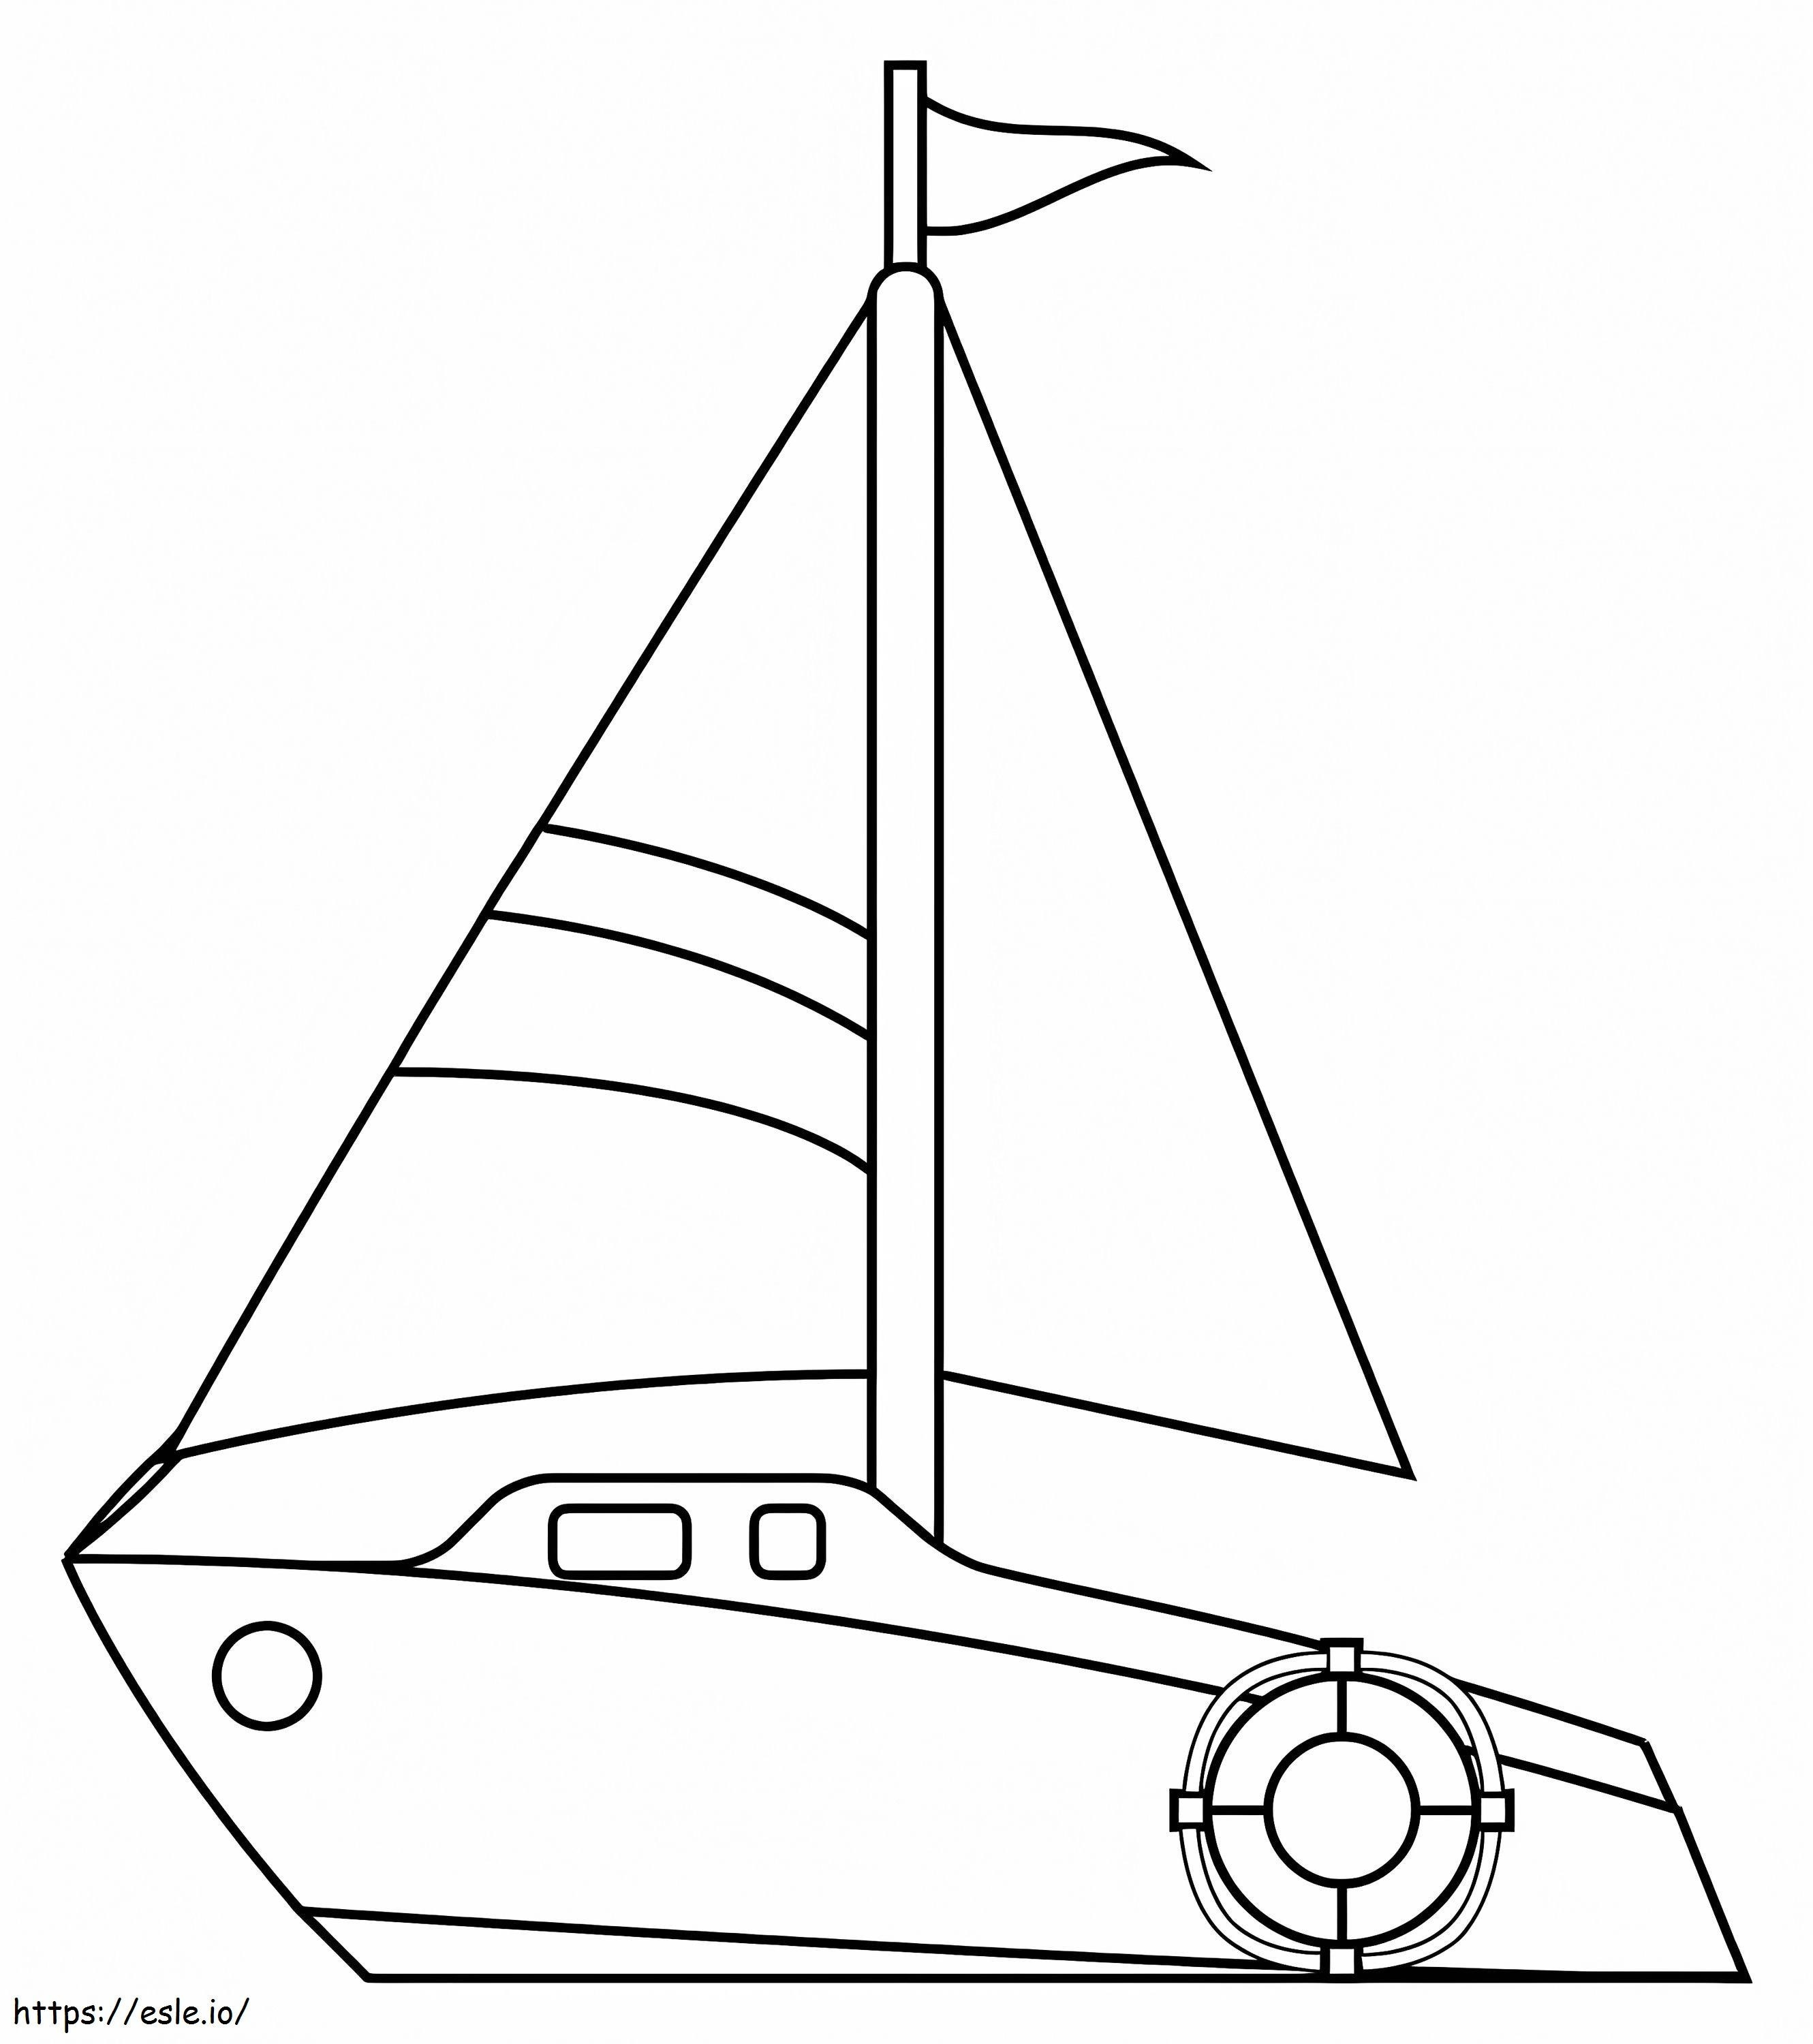 Sailboat coloring page